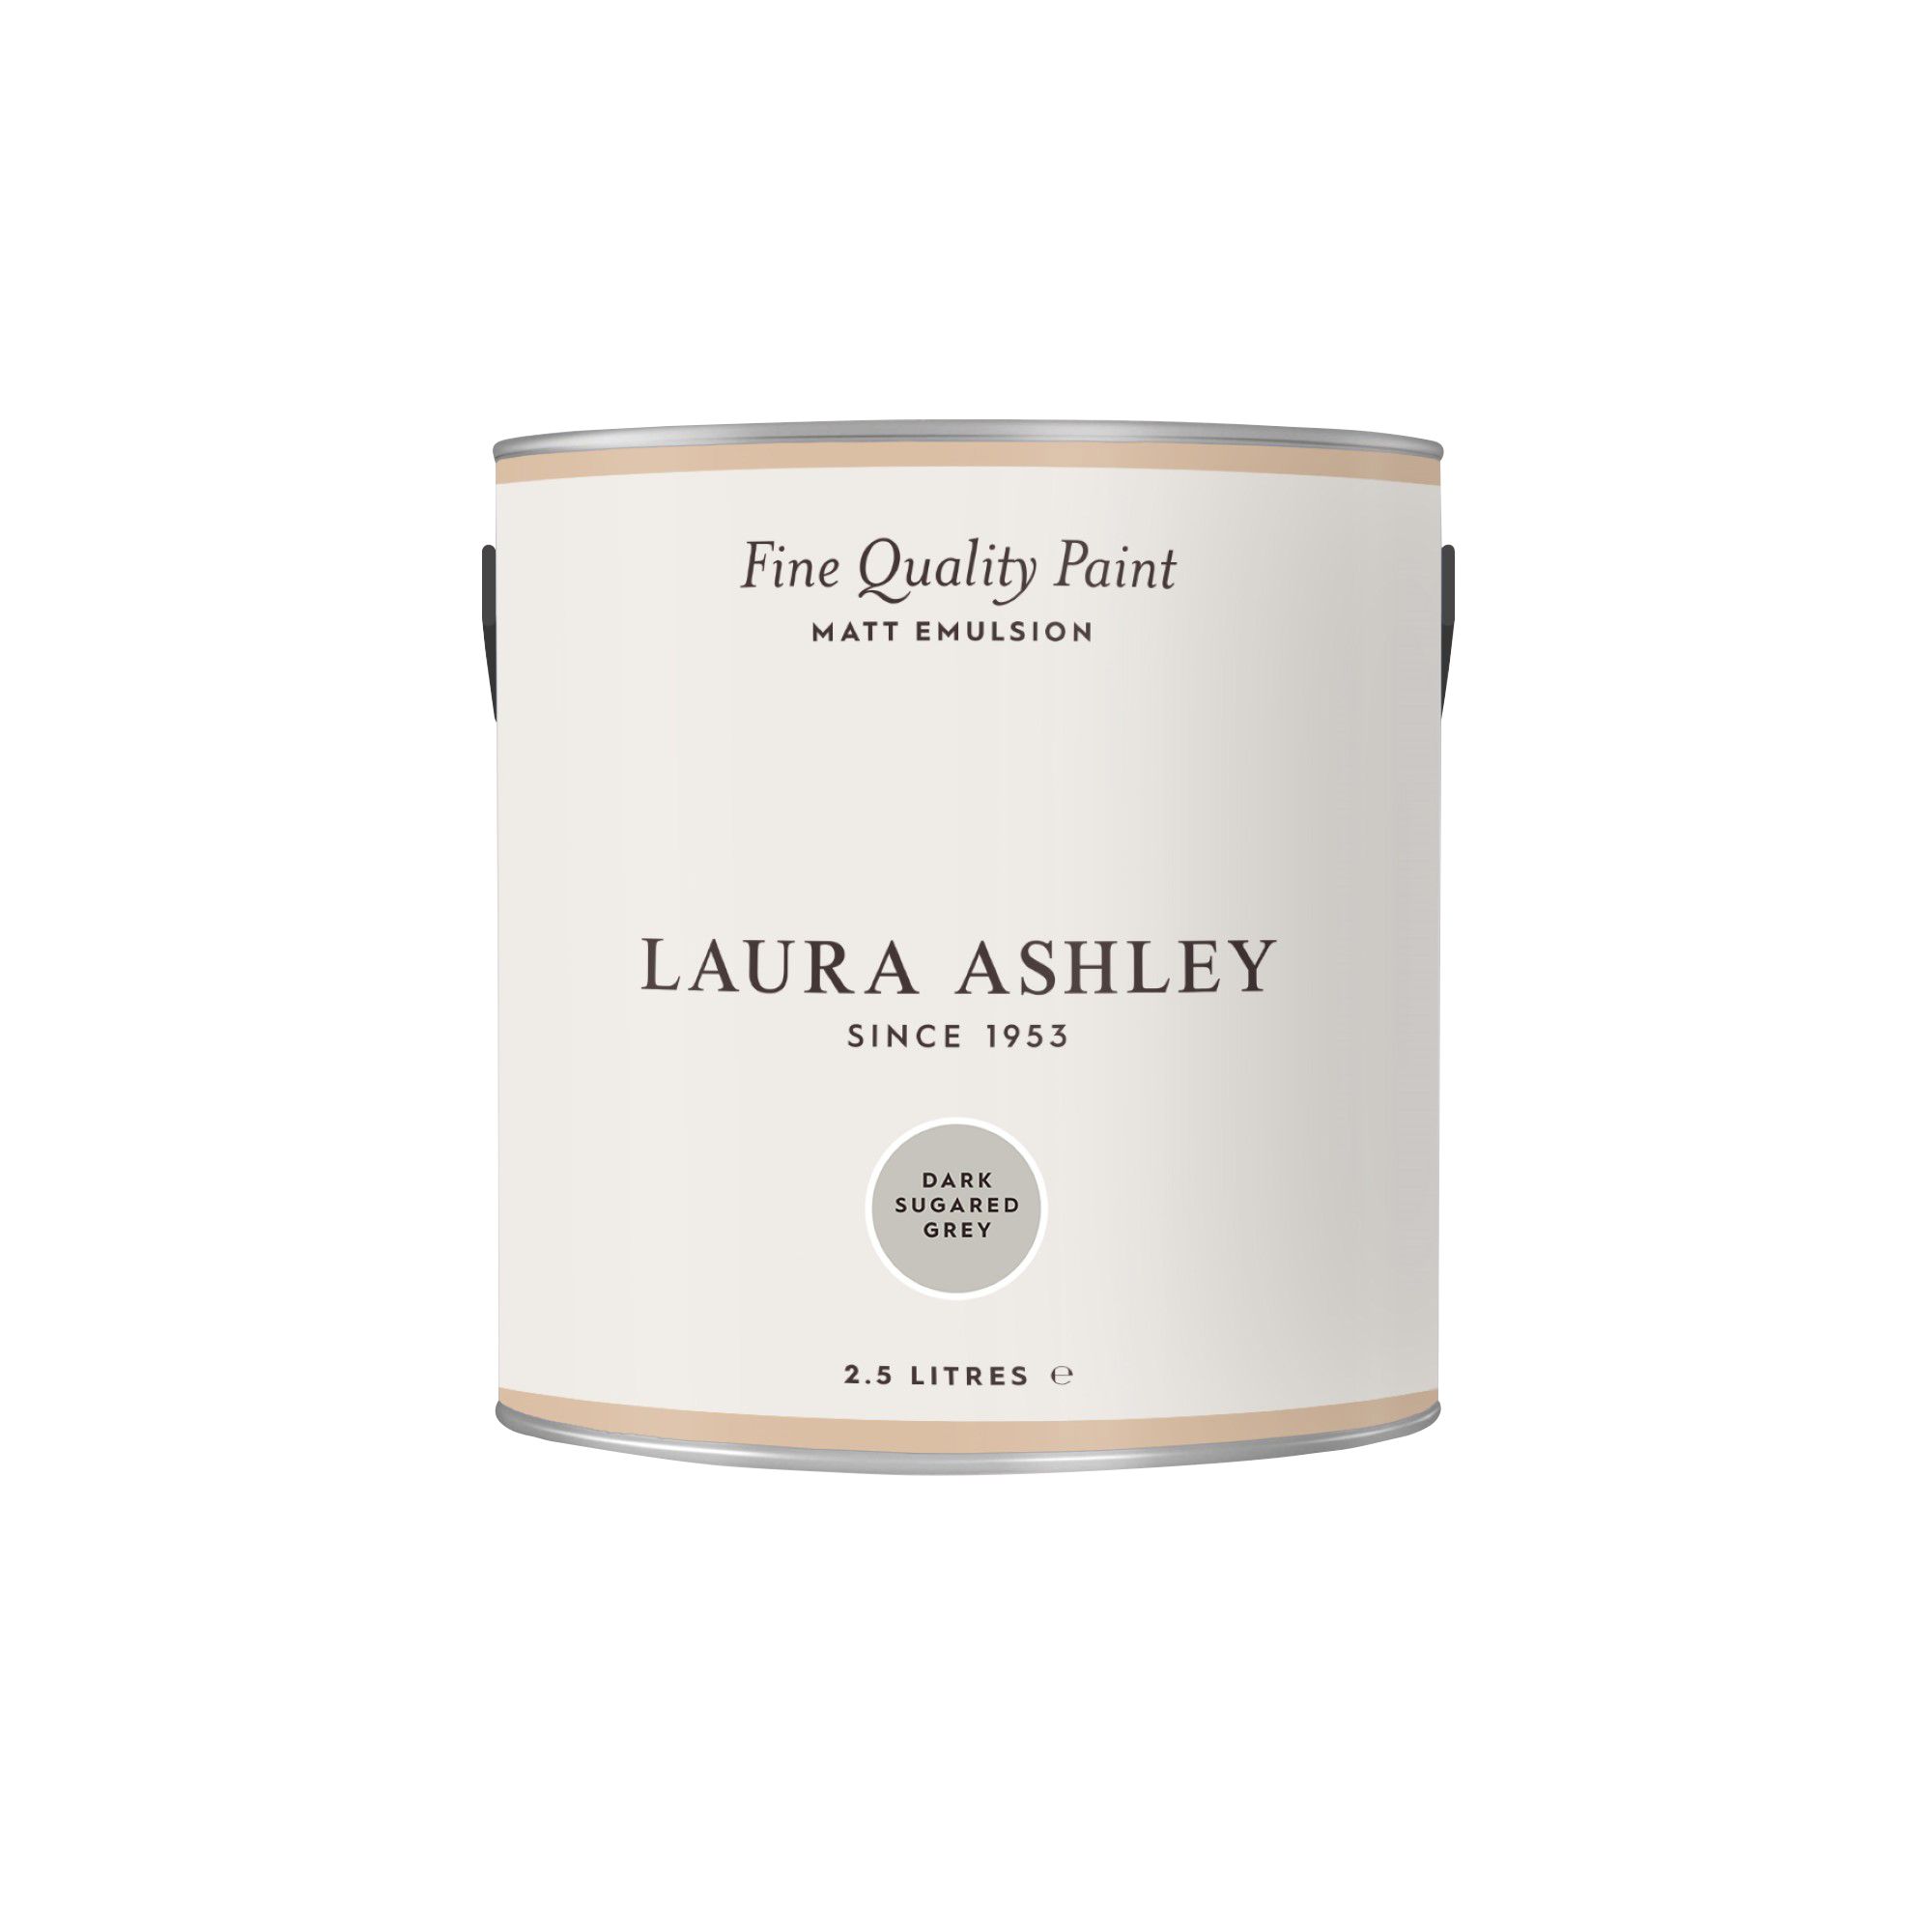 Laura Ashley Dark Sugared Grey Matt Emulsion paint, 2.5L